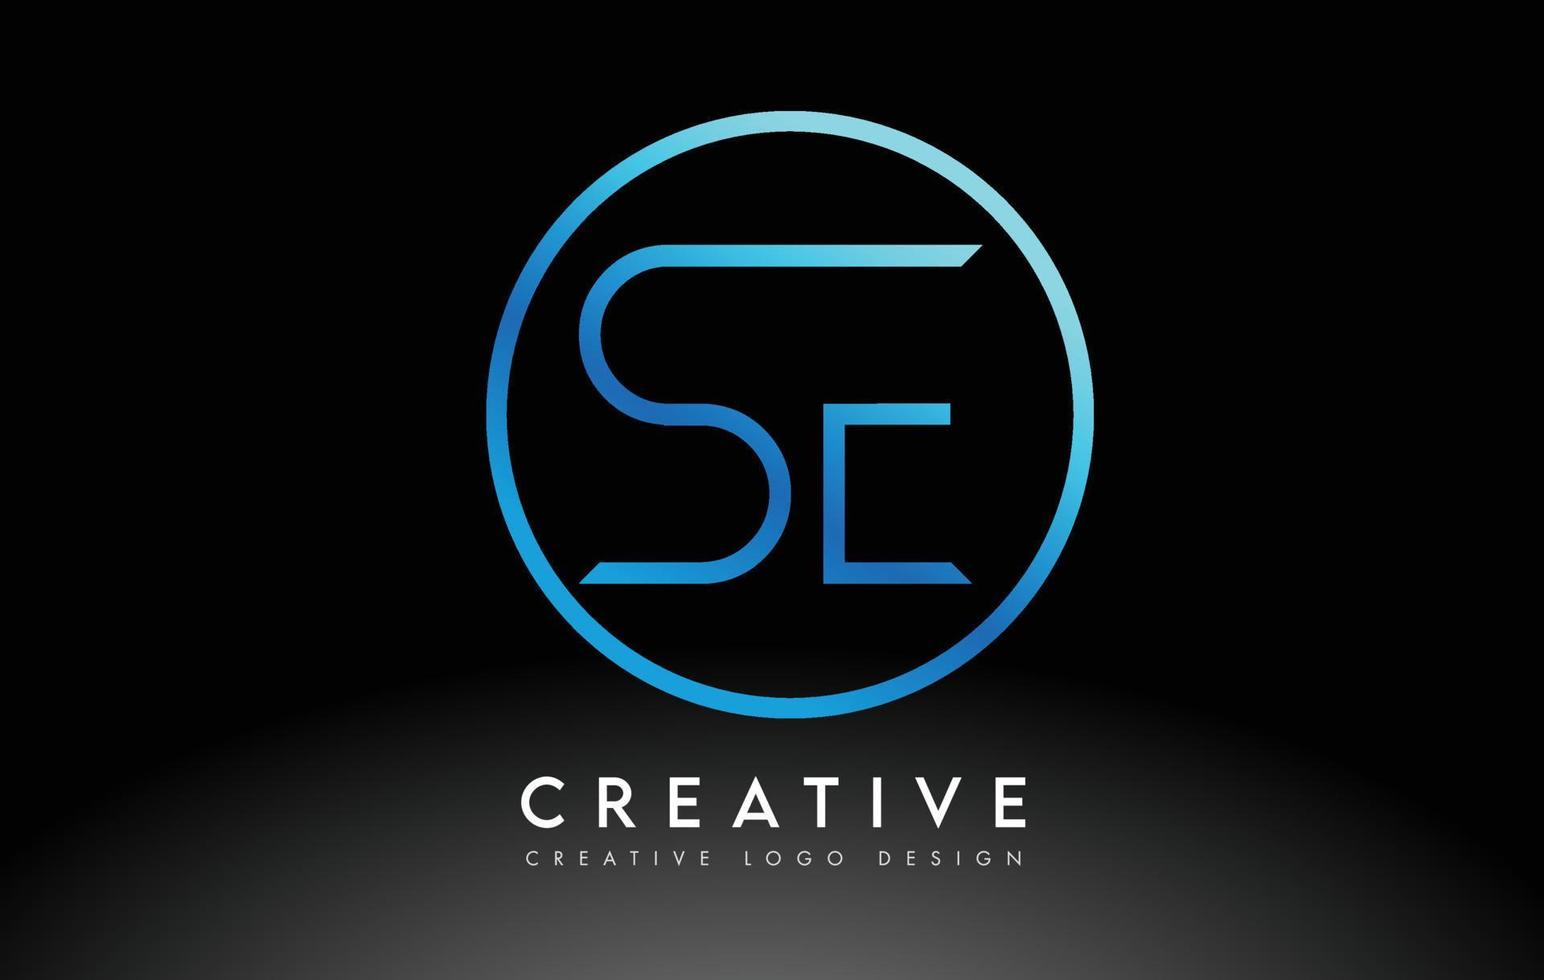 diseño de logotipo de letras azul neón se delgado. concepto creativo simple carta limpia. vector